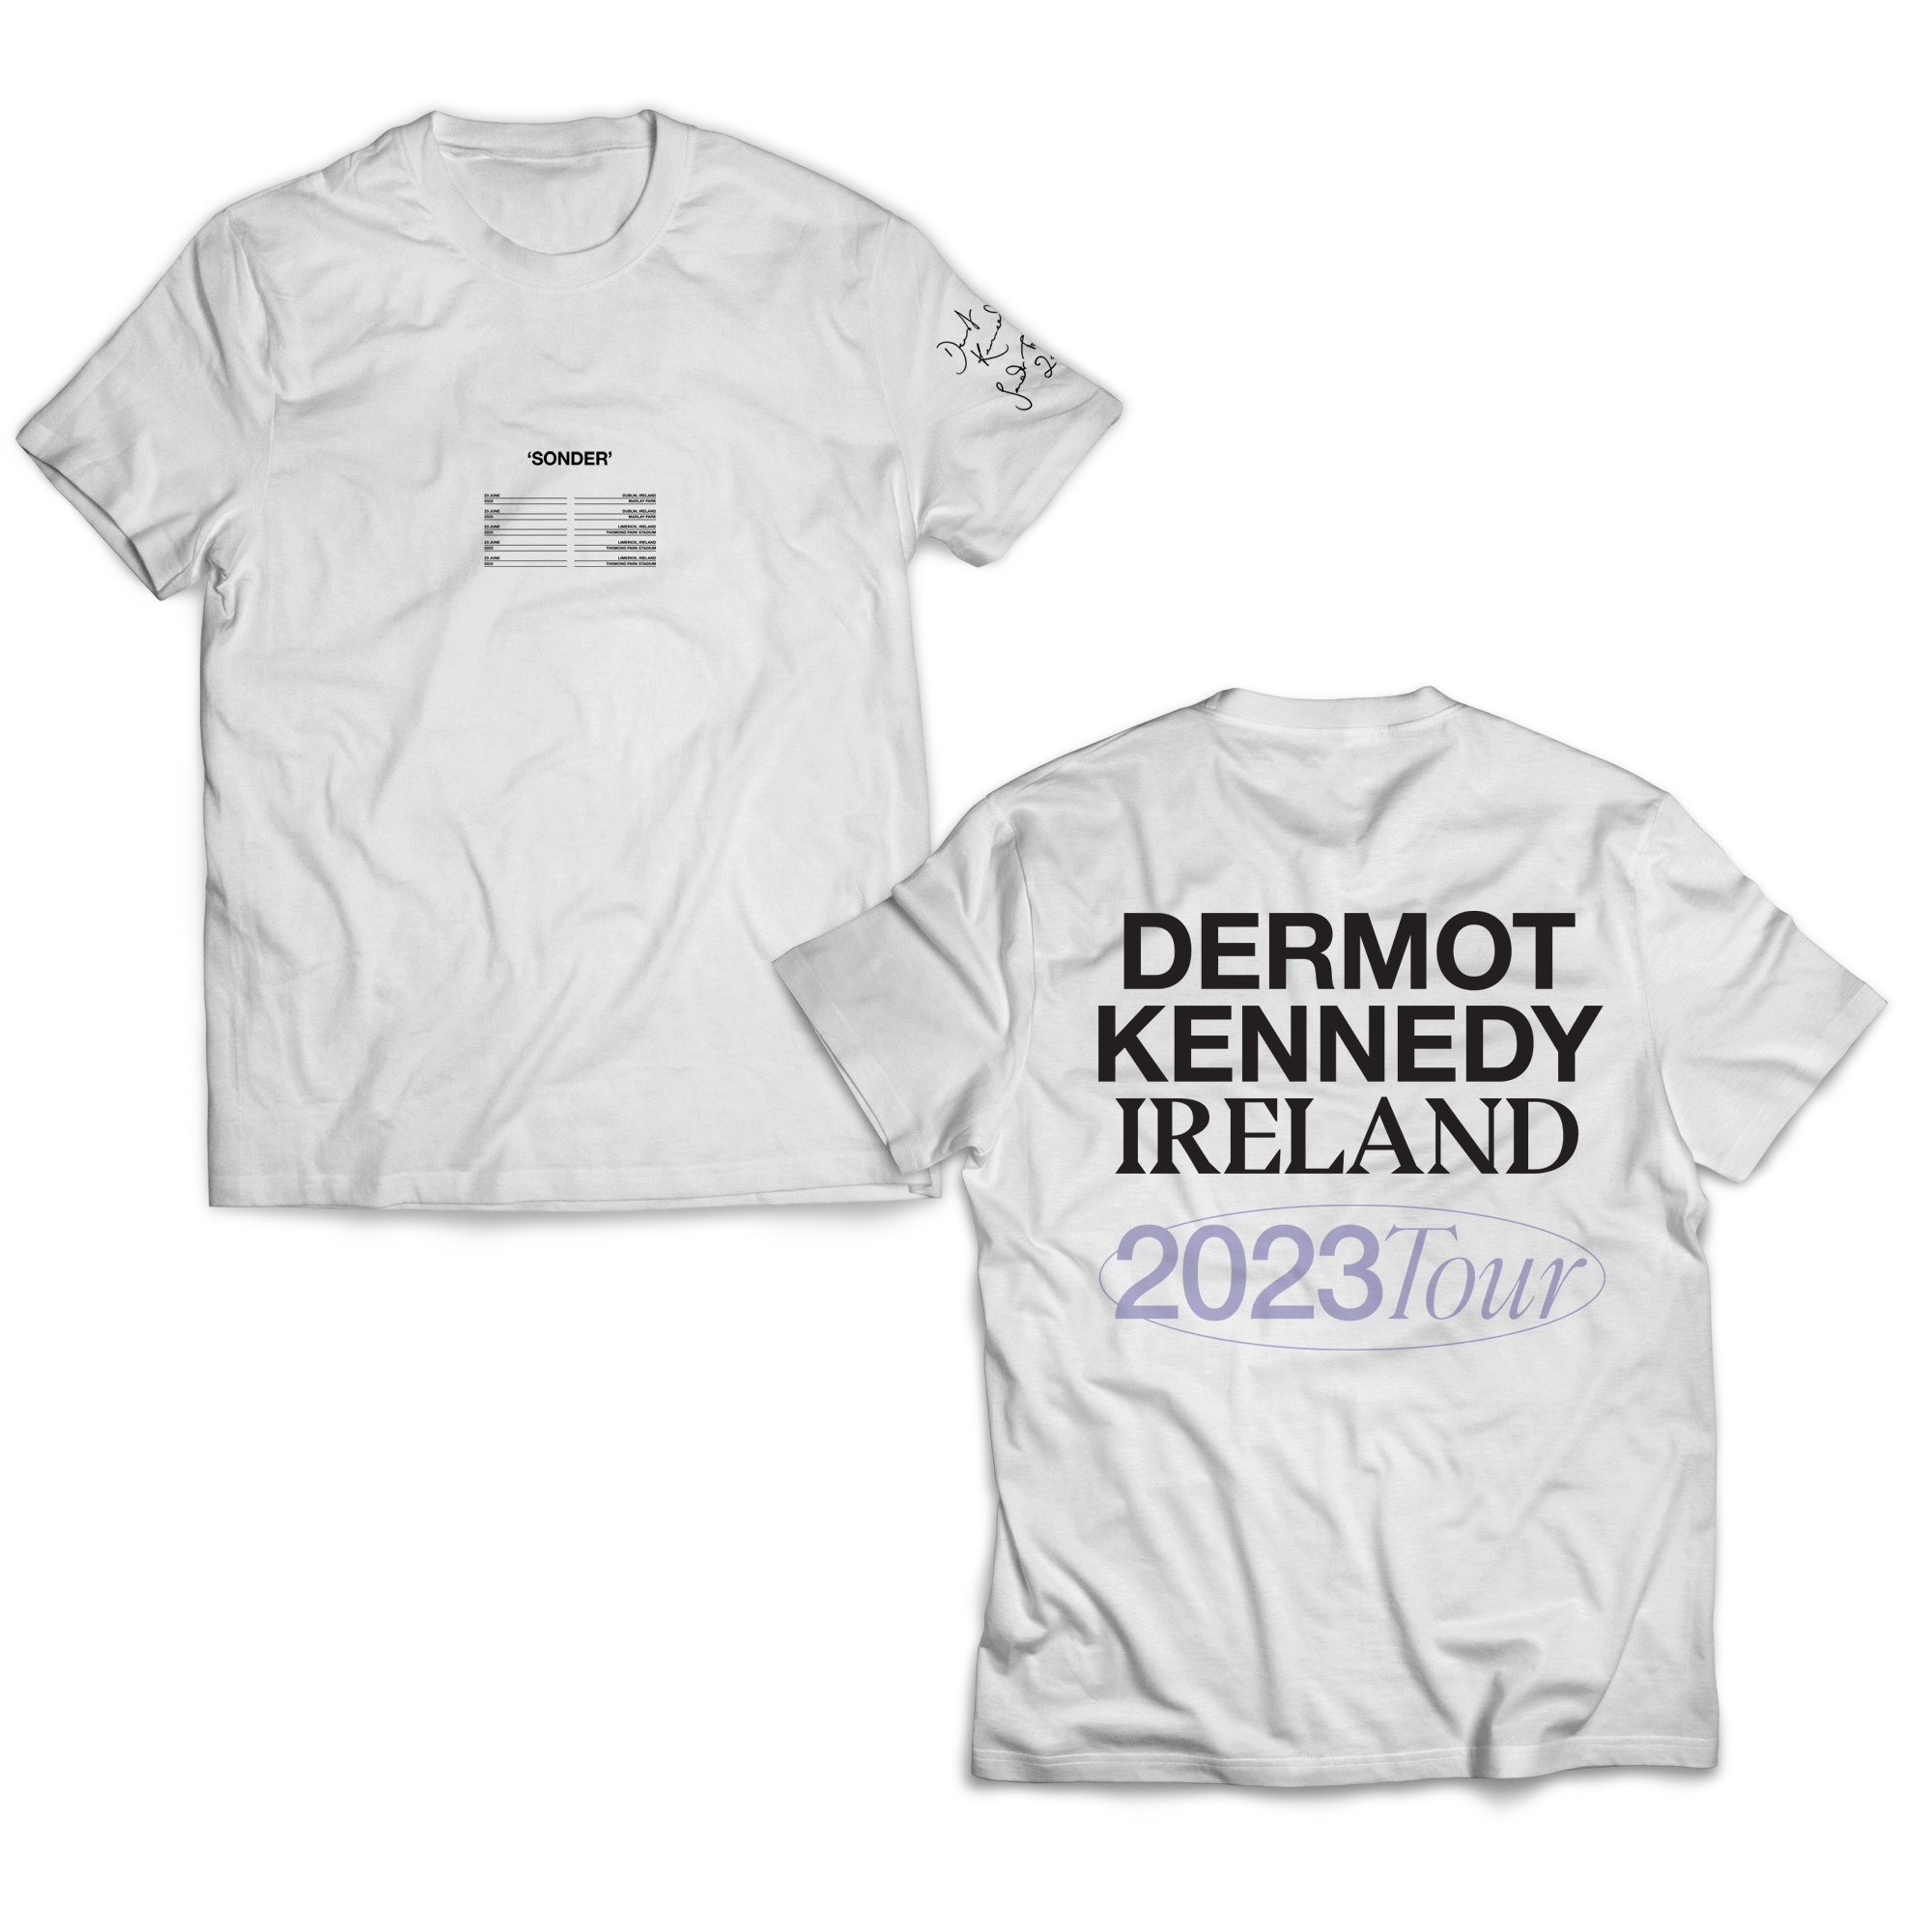 Dermot Kennedy - Ireland White Tee